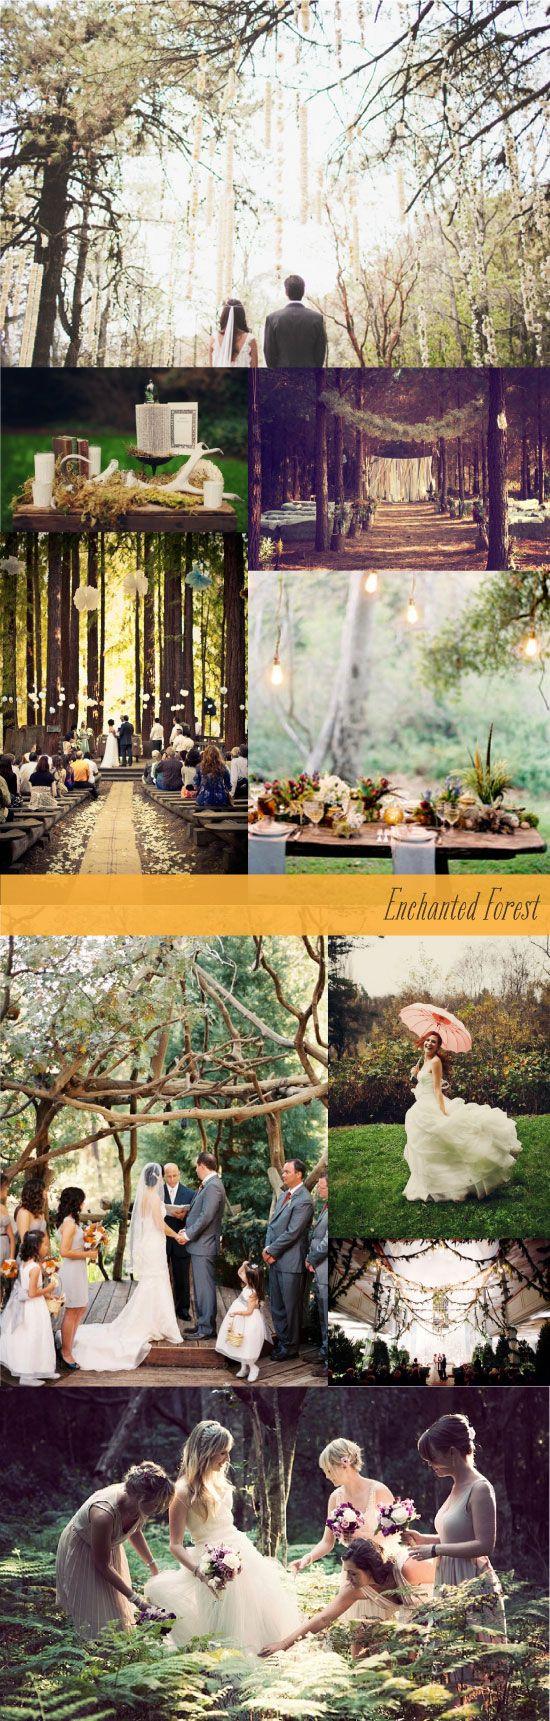 Hochzeit - Enchanted Rustic Forest Wedding Inspiration Board